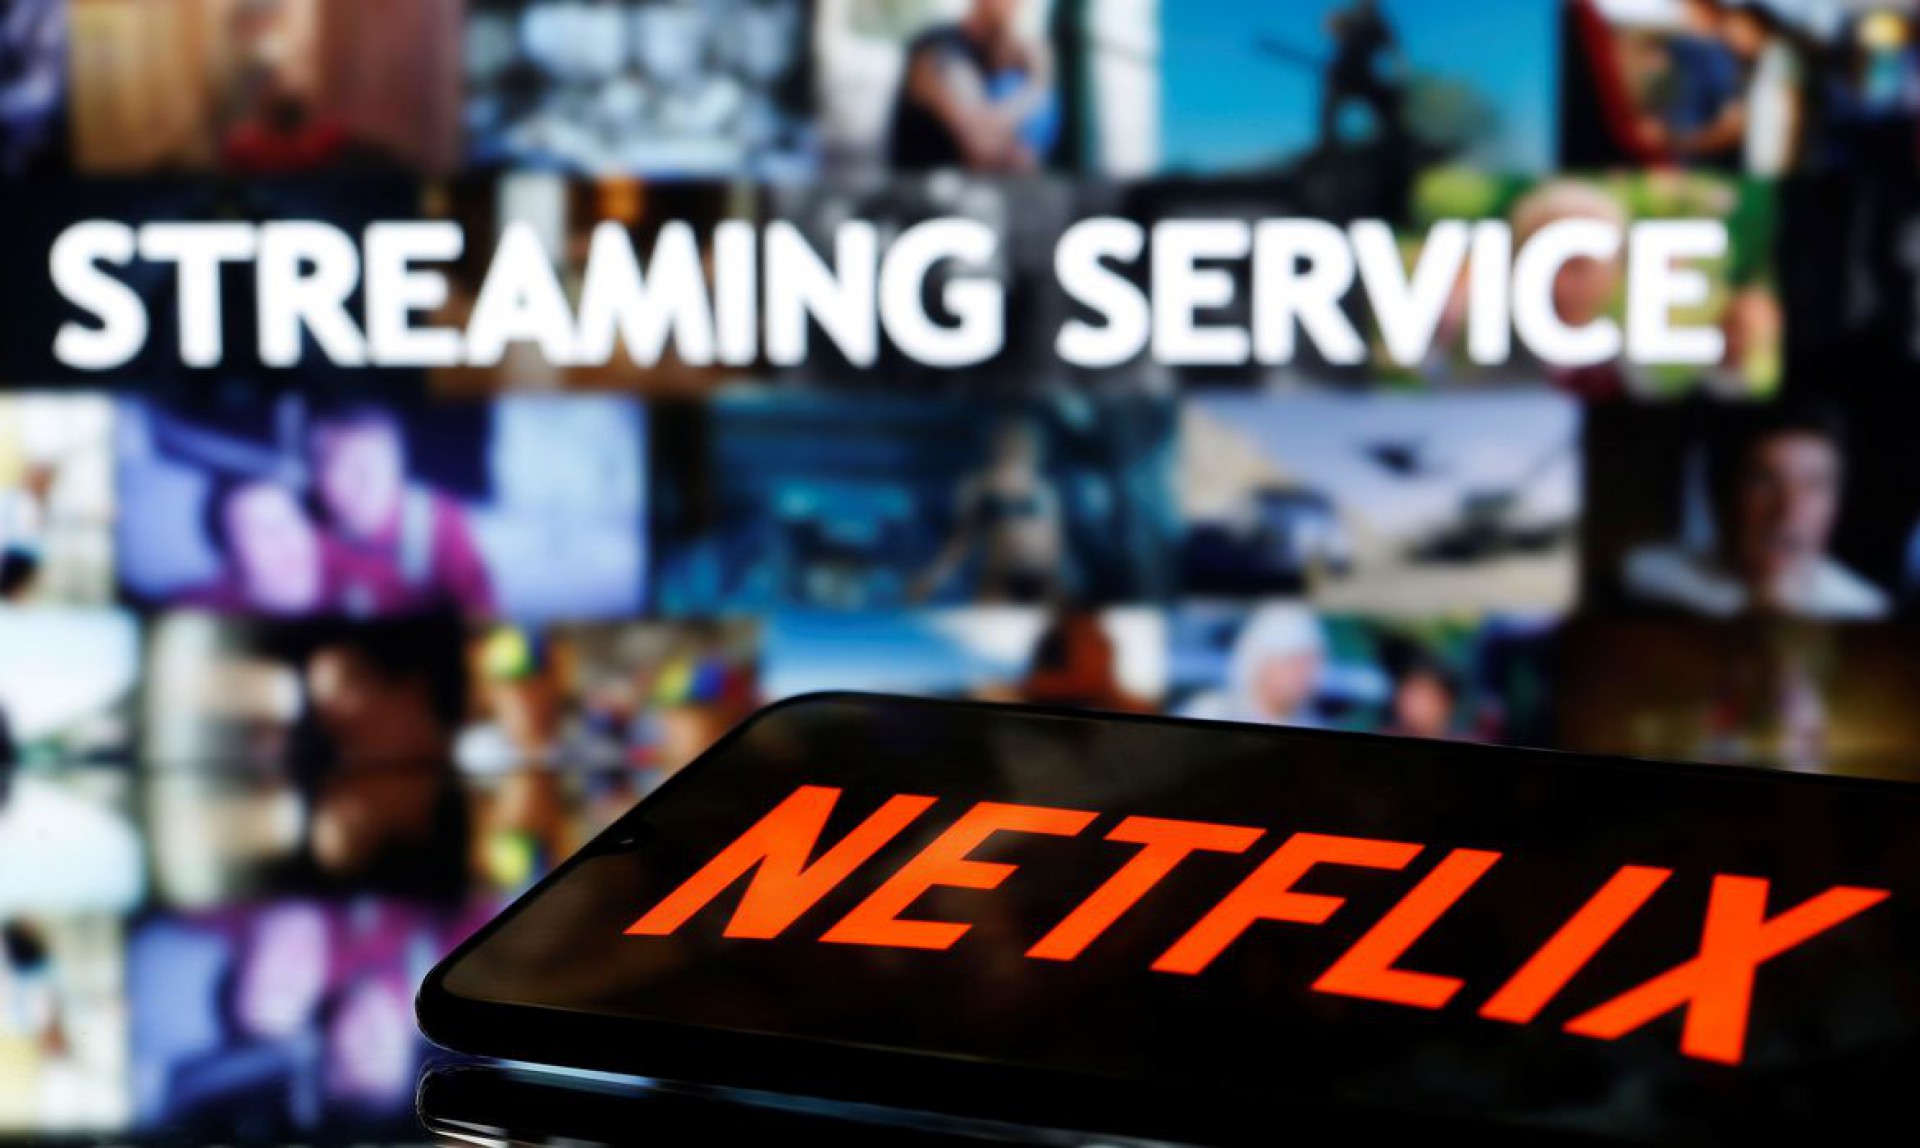 Netflix divulga lista de séries mais assistidas no Brasil e no